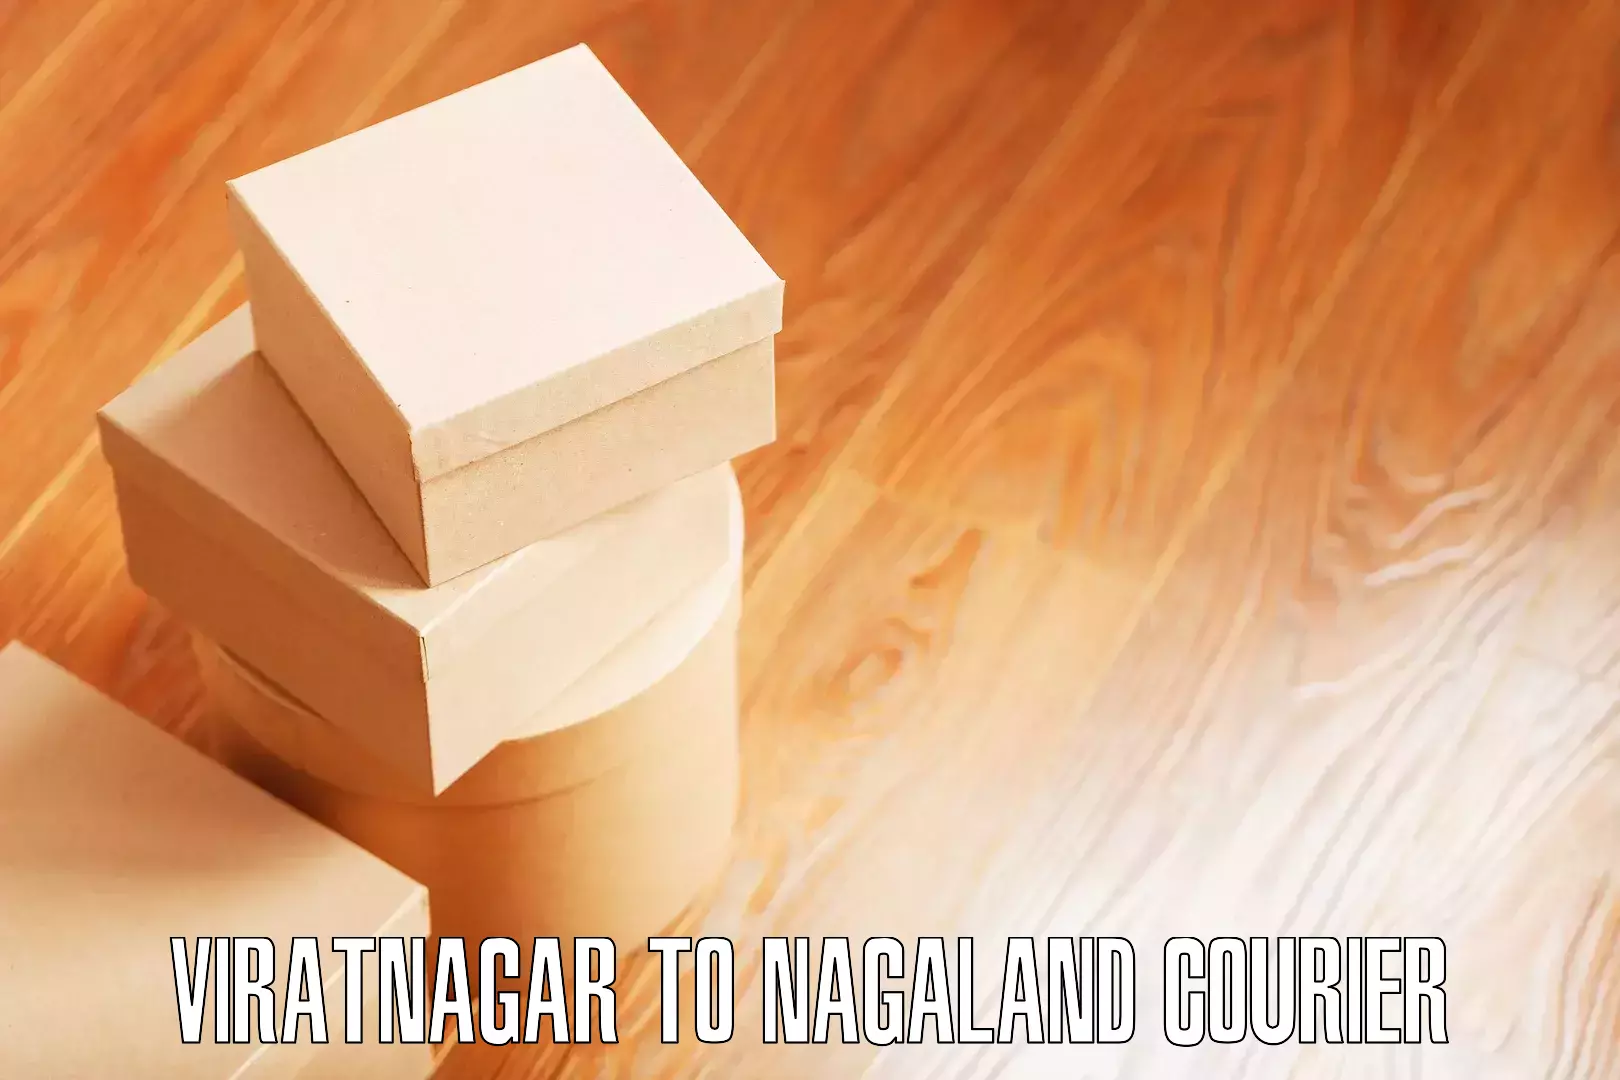 Affordable home movers Viratnagar to Nagaland